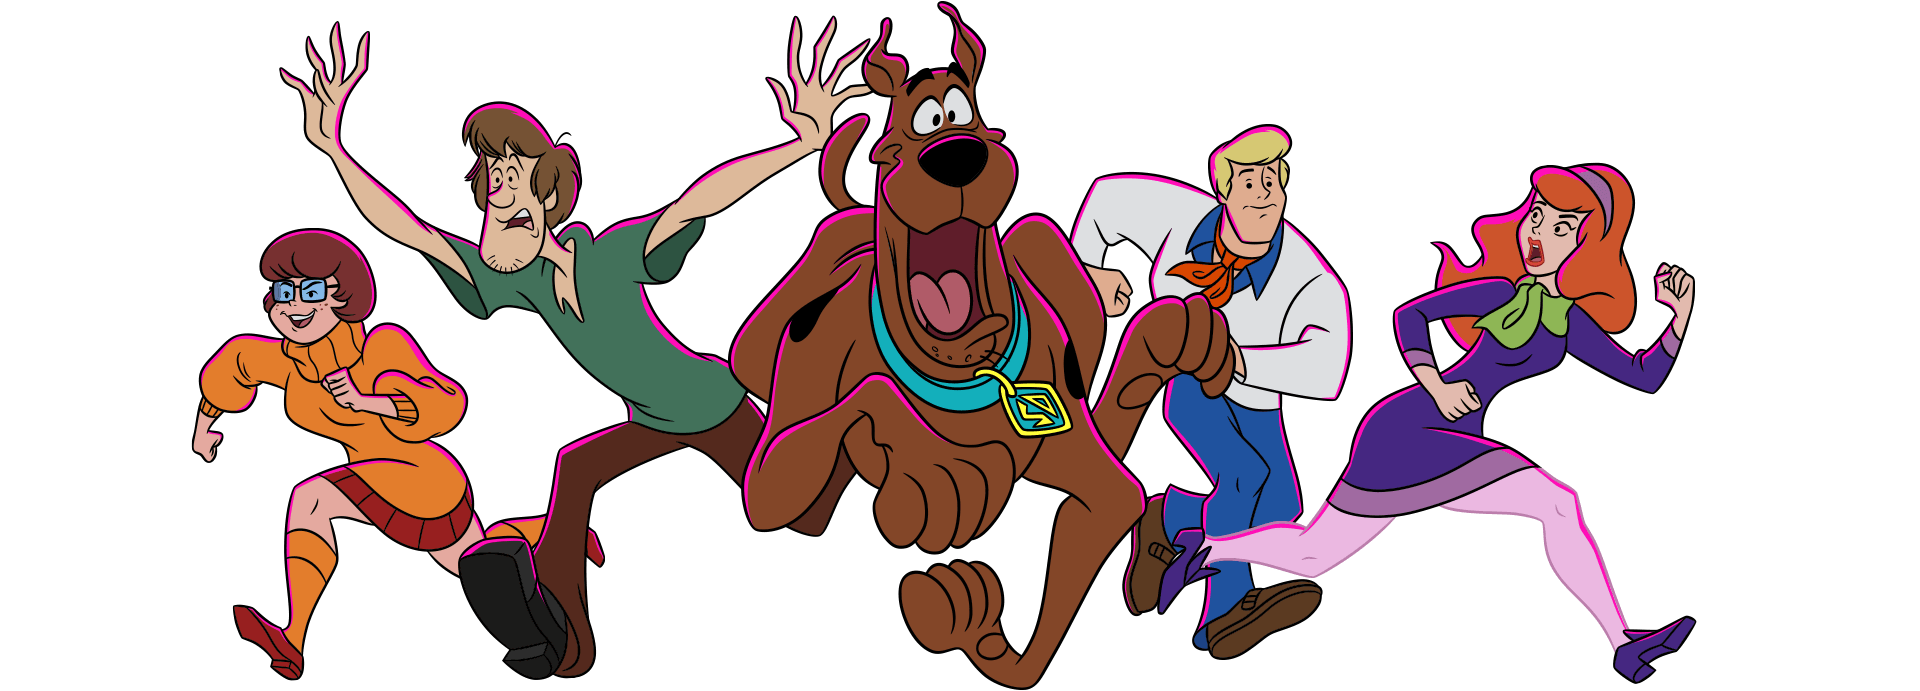 Assistir Scooby-Doo Online